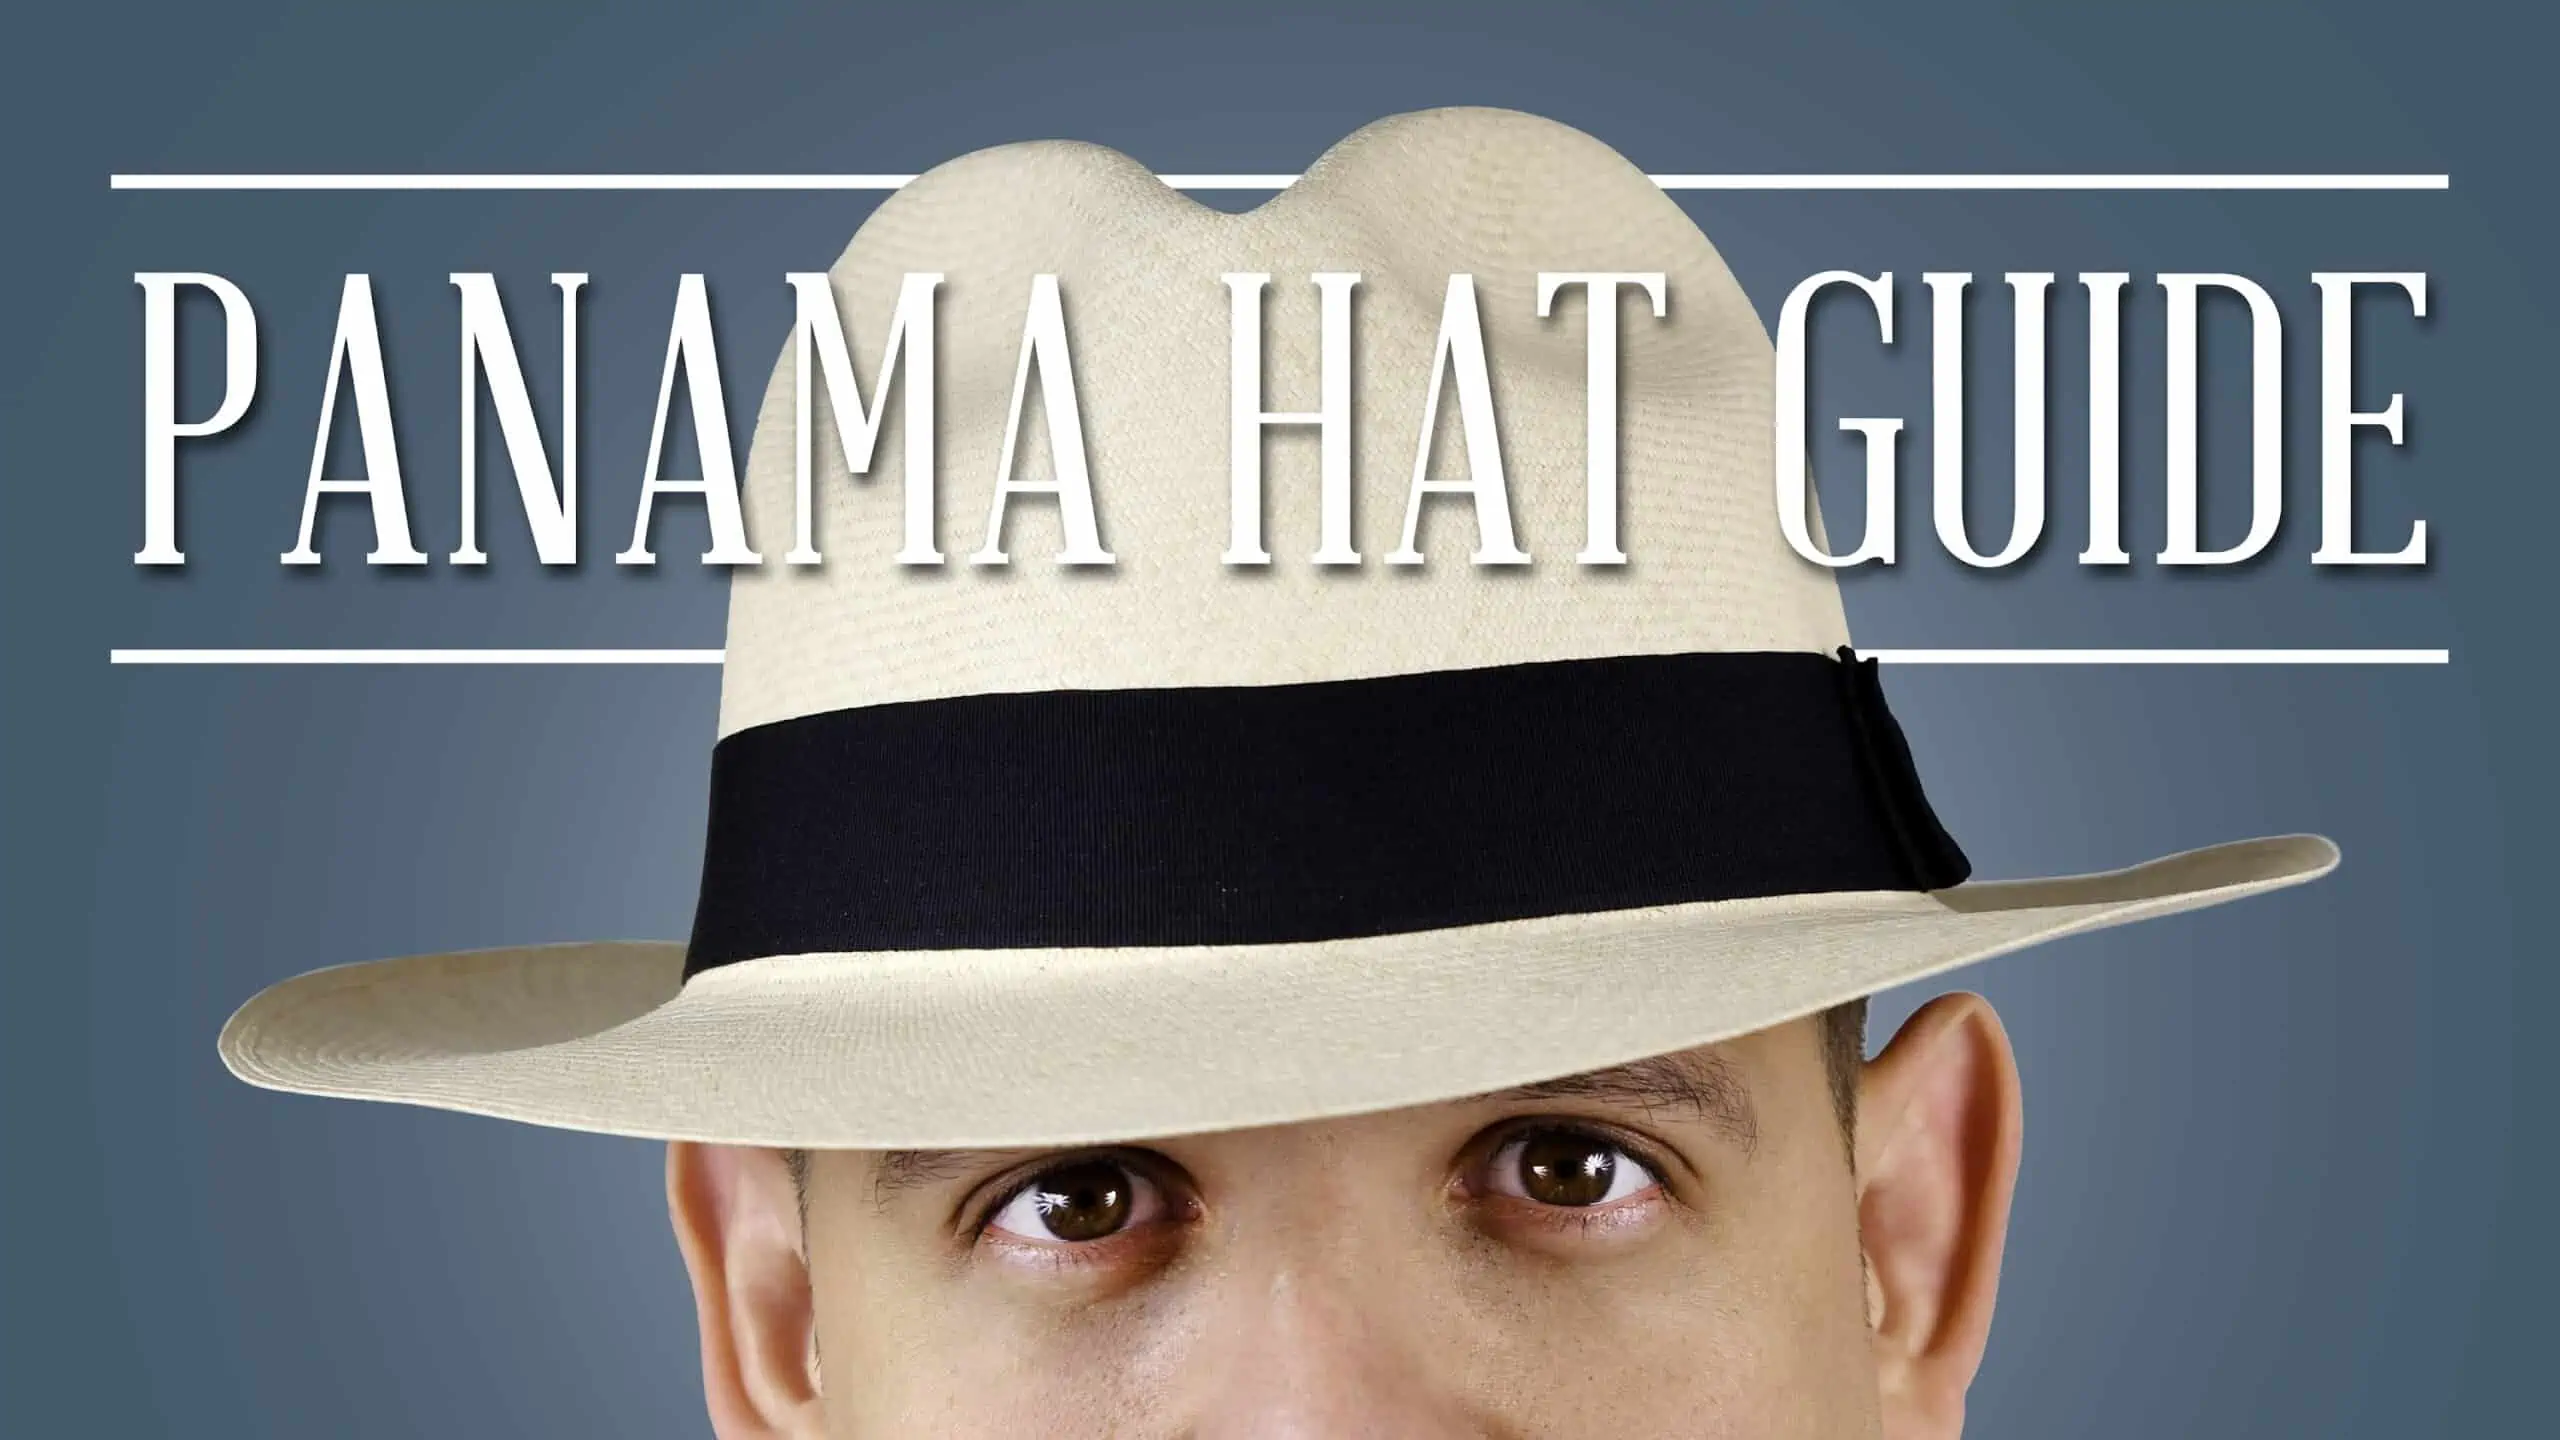 Sombrero de Paja - Palm Grey